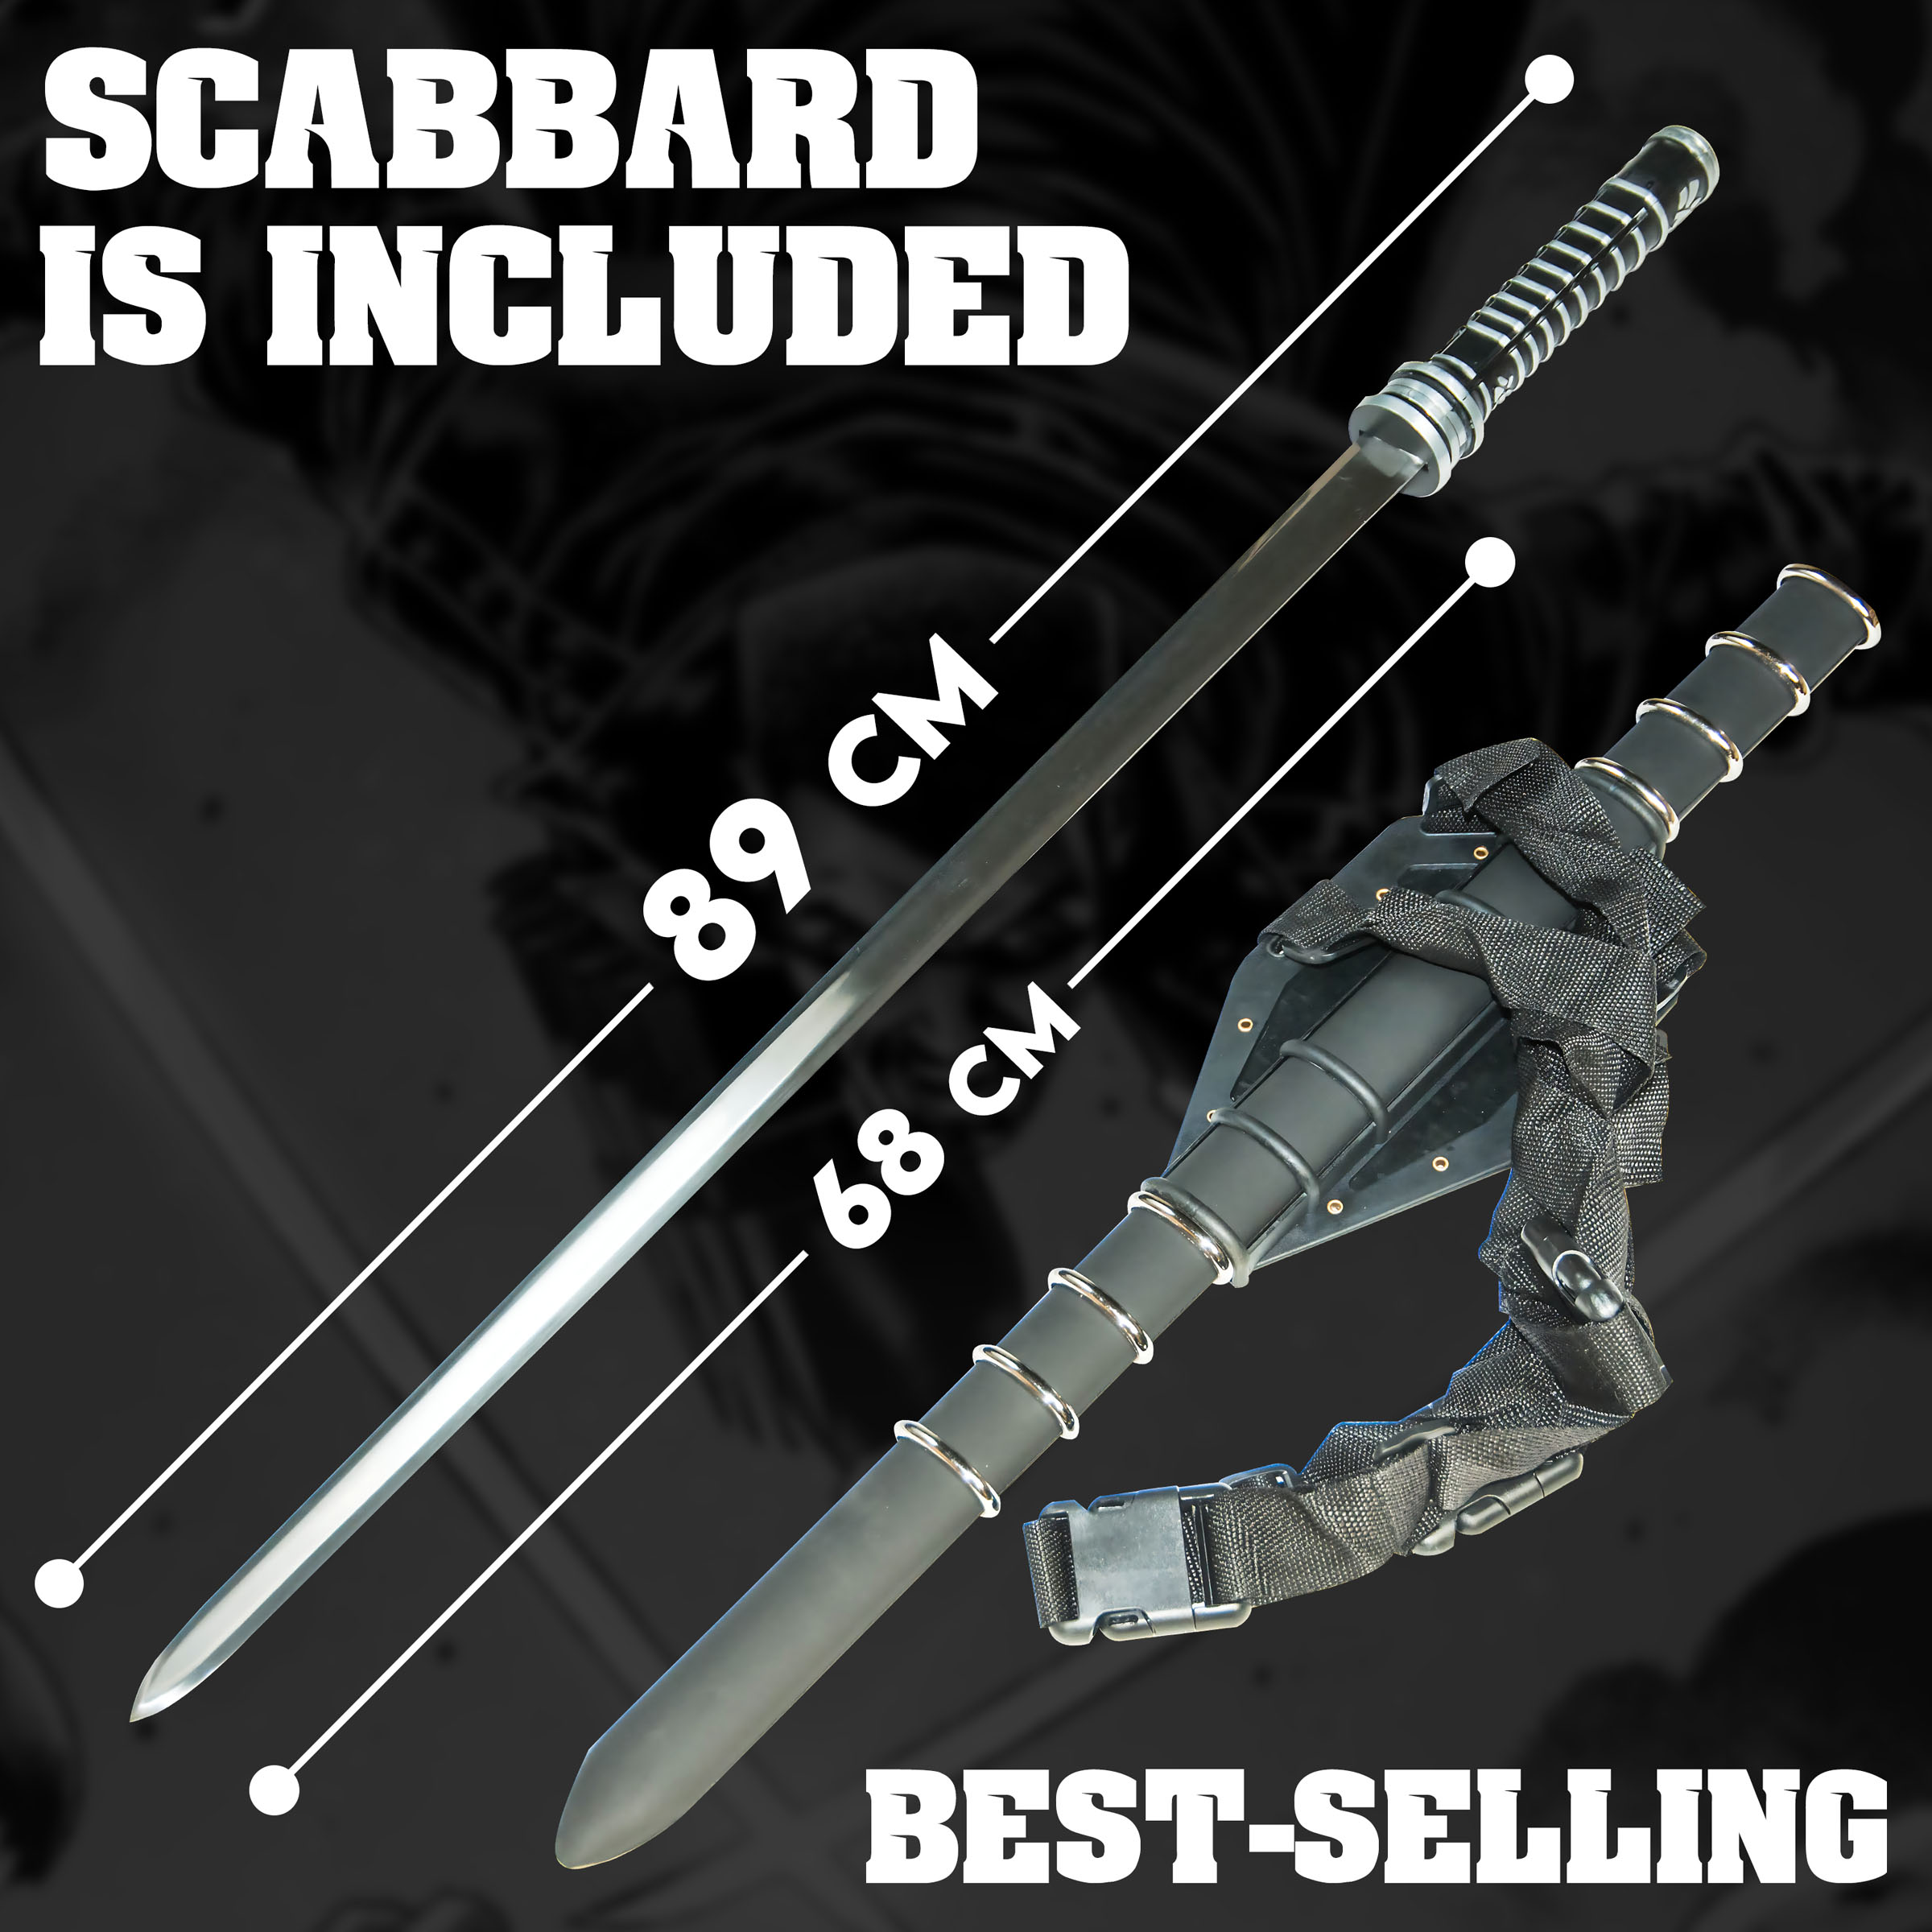 Blade sword